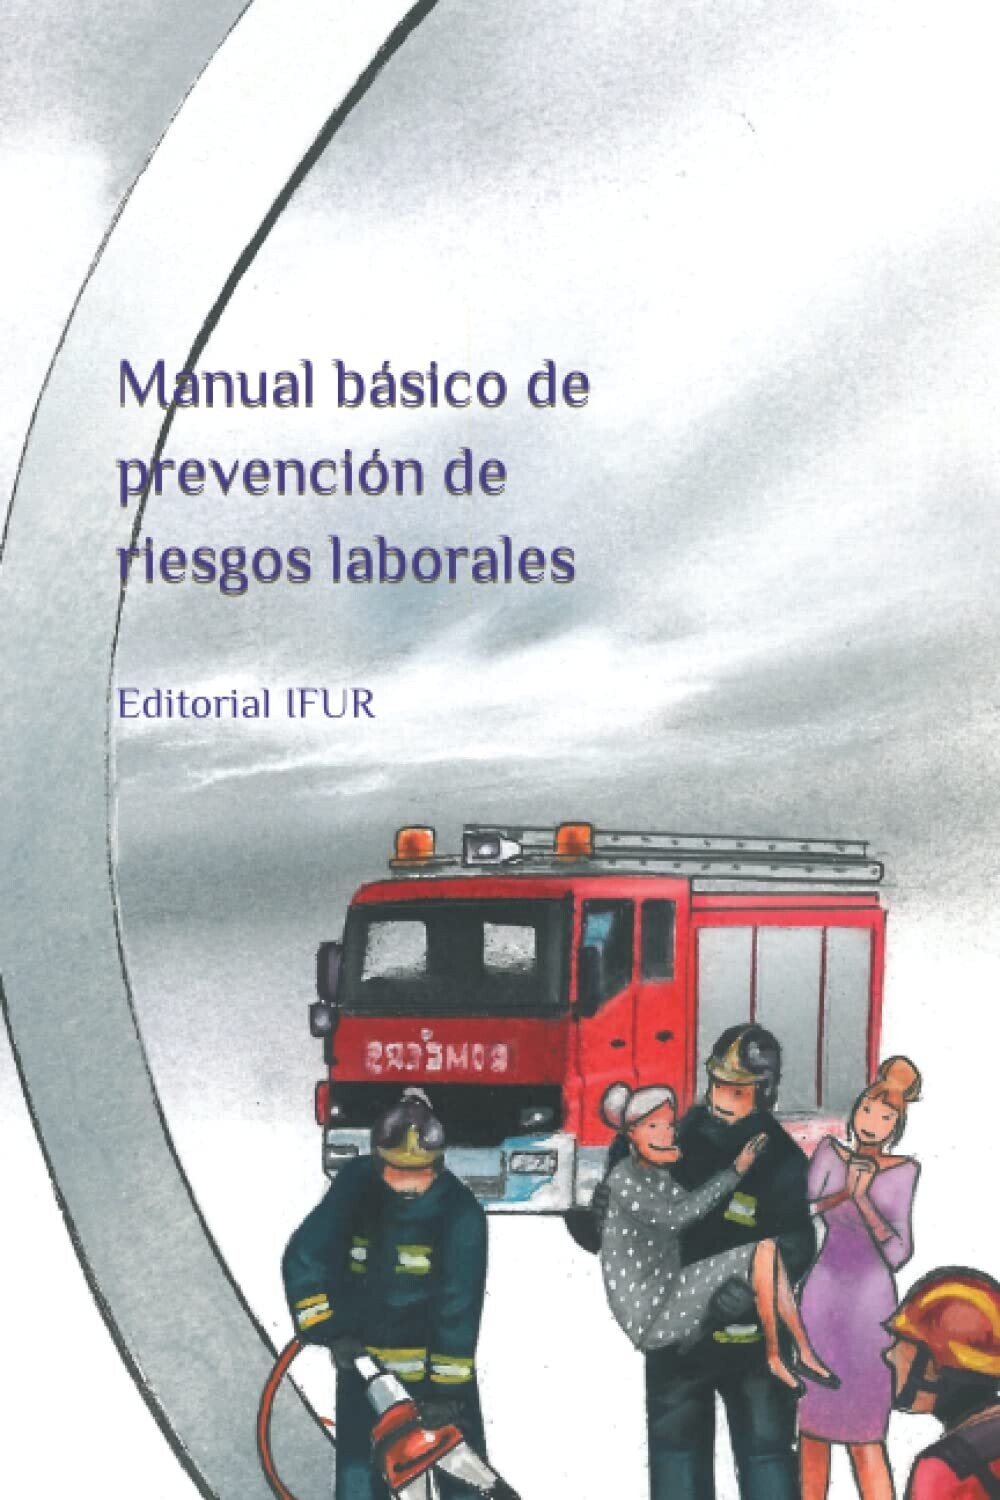 Manual básico de prevención de riesgos laborales - 9ª edición.